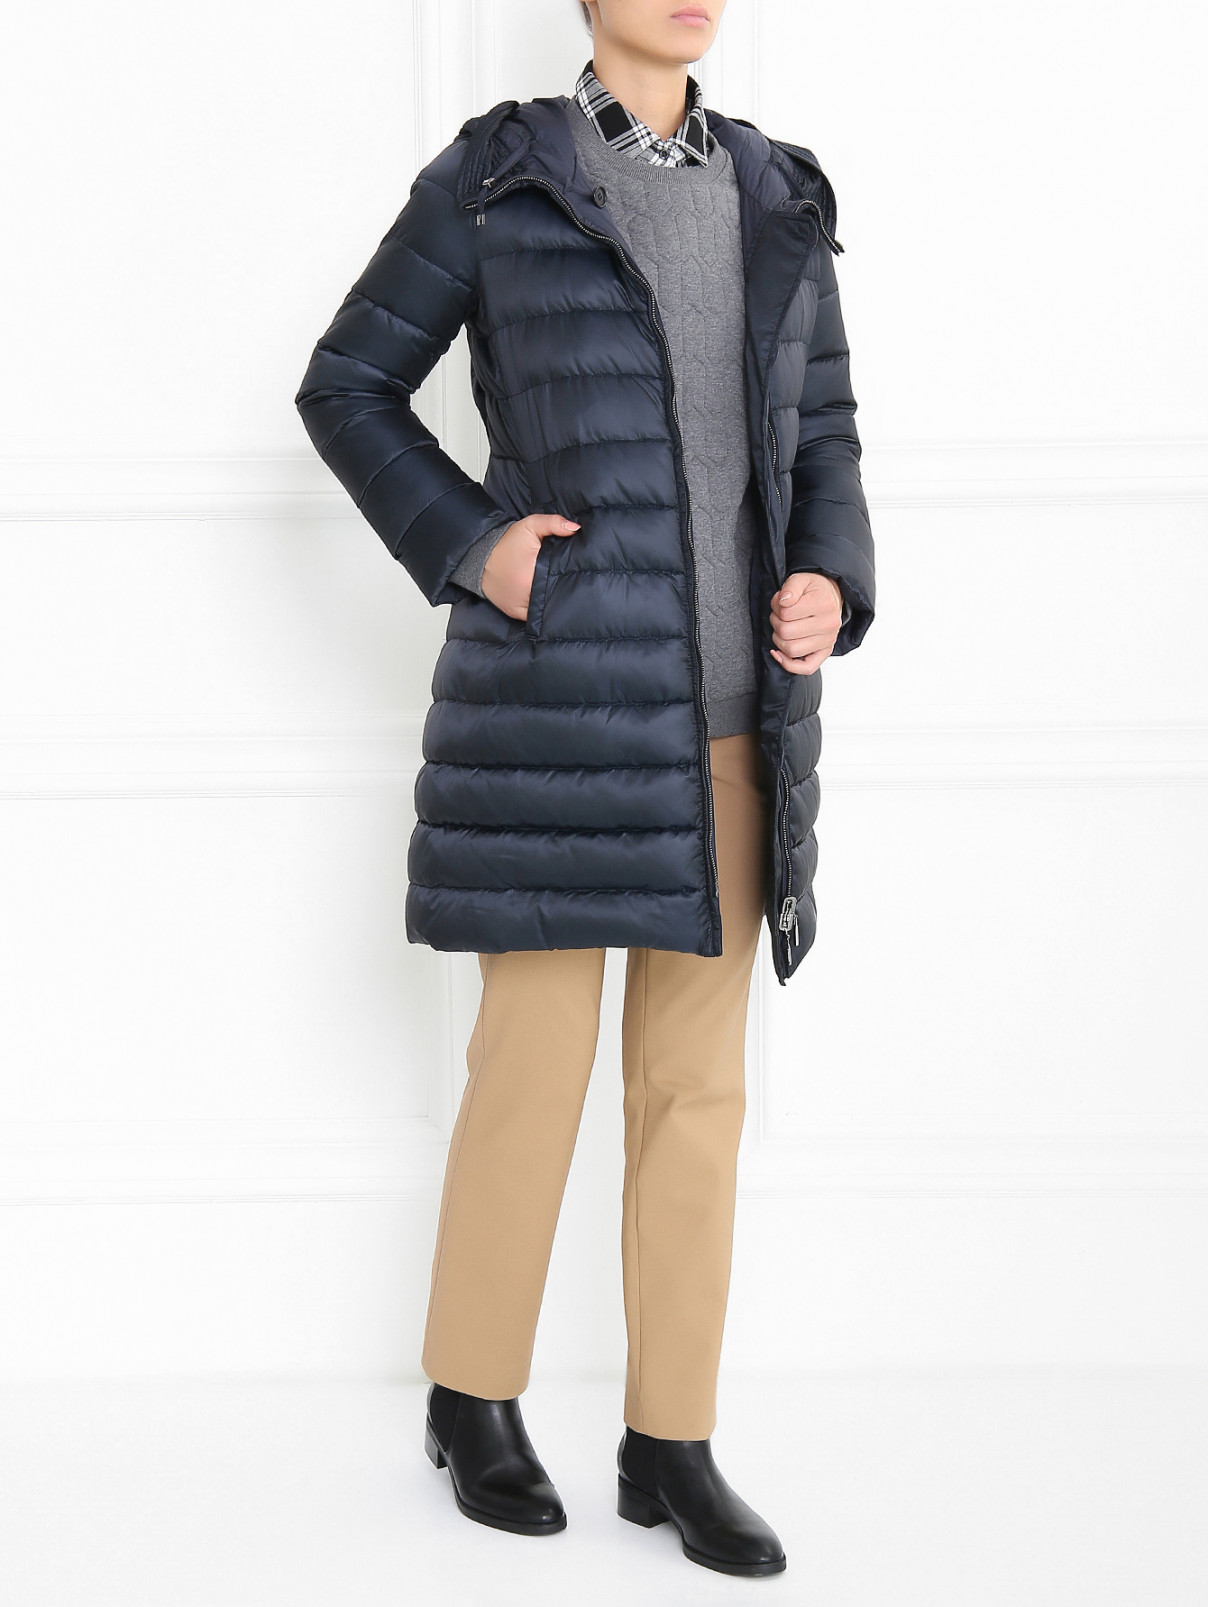 Пуховое пальто с поясом и капюшоном S Max Mara  –  Модель Общий вид  – Цвет:  Синий